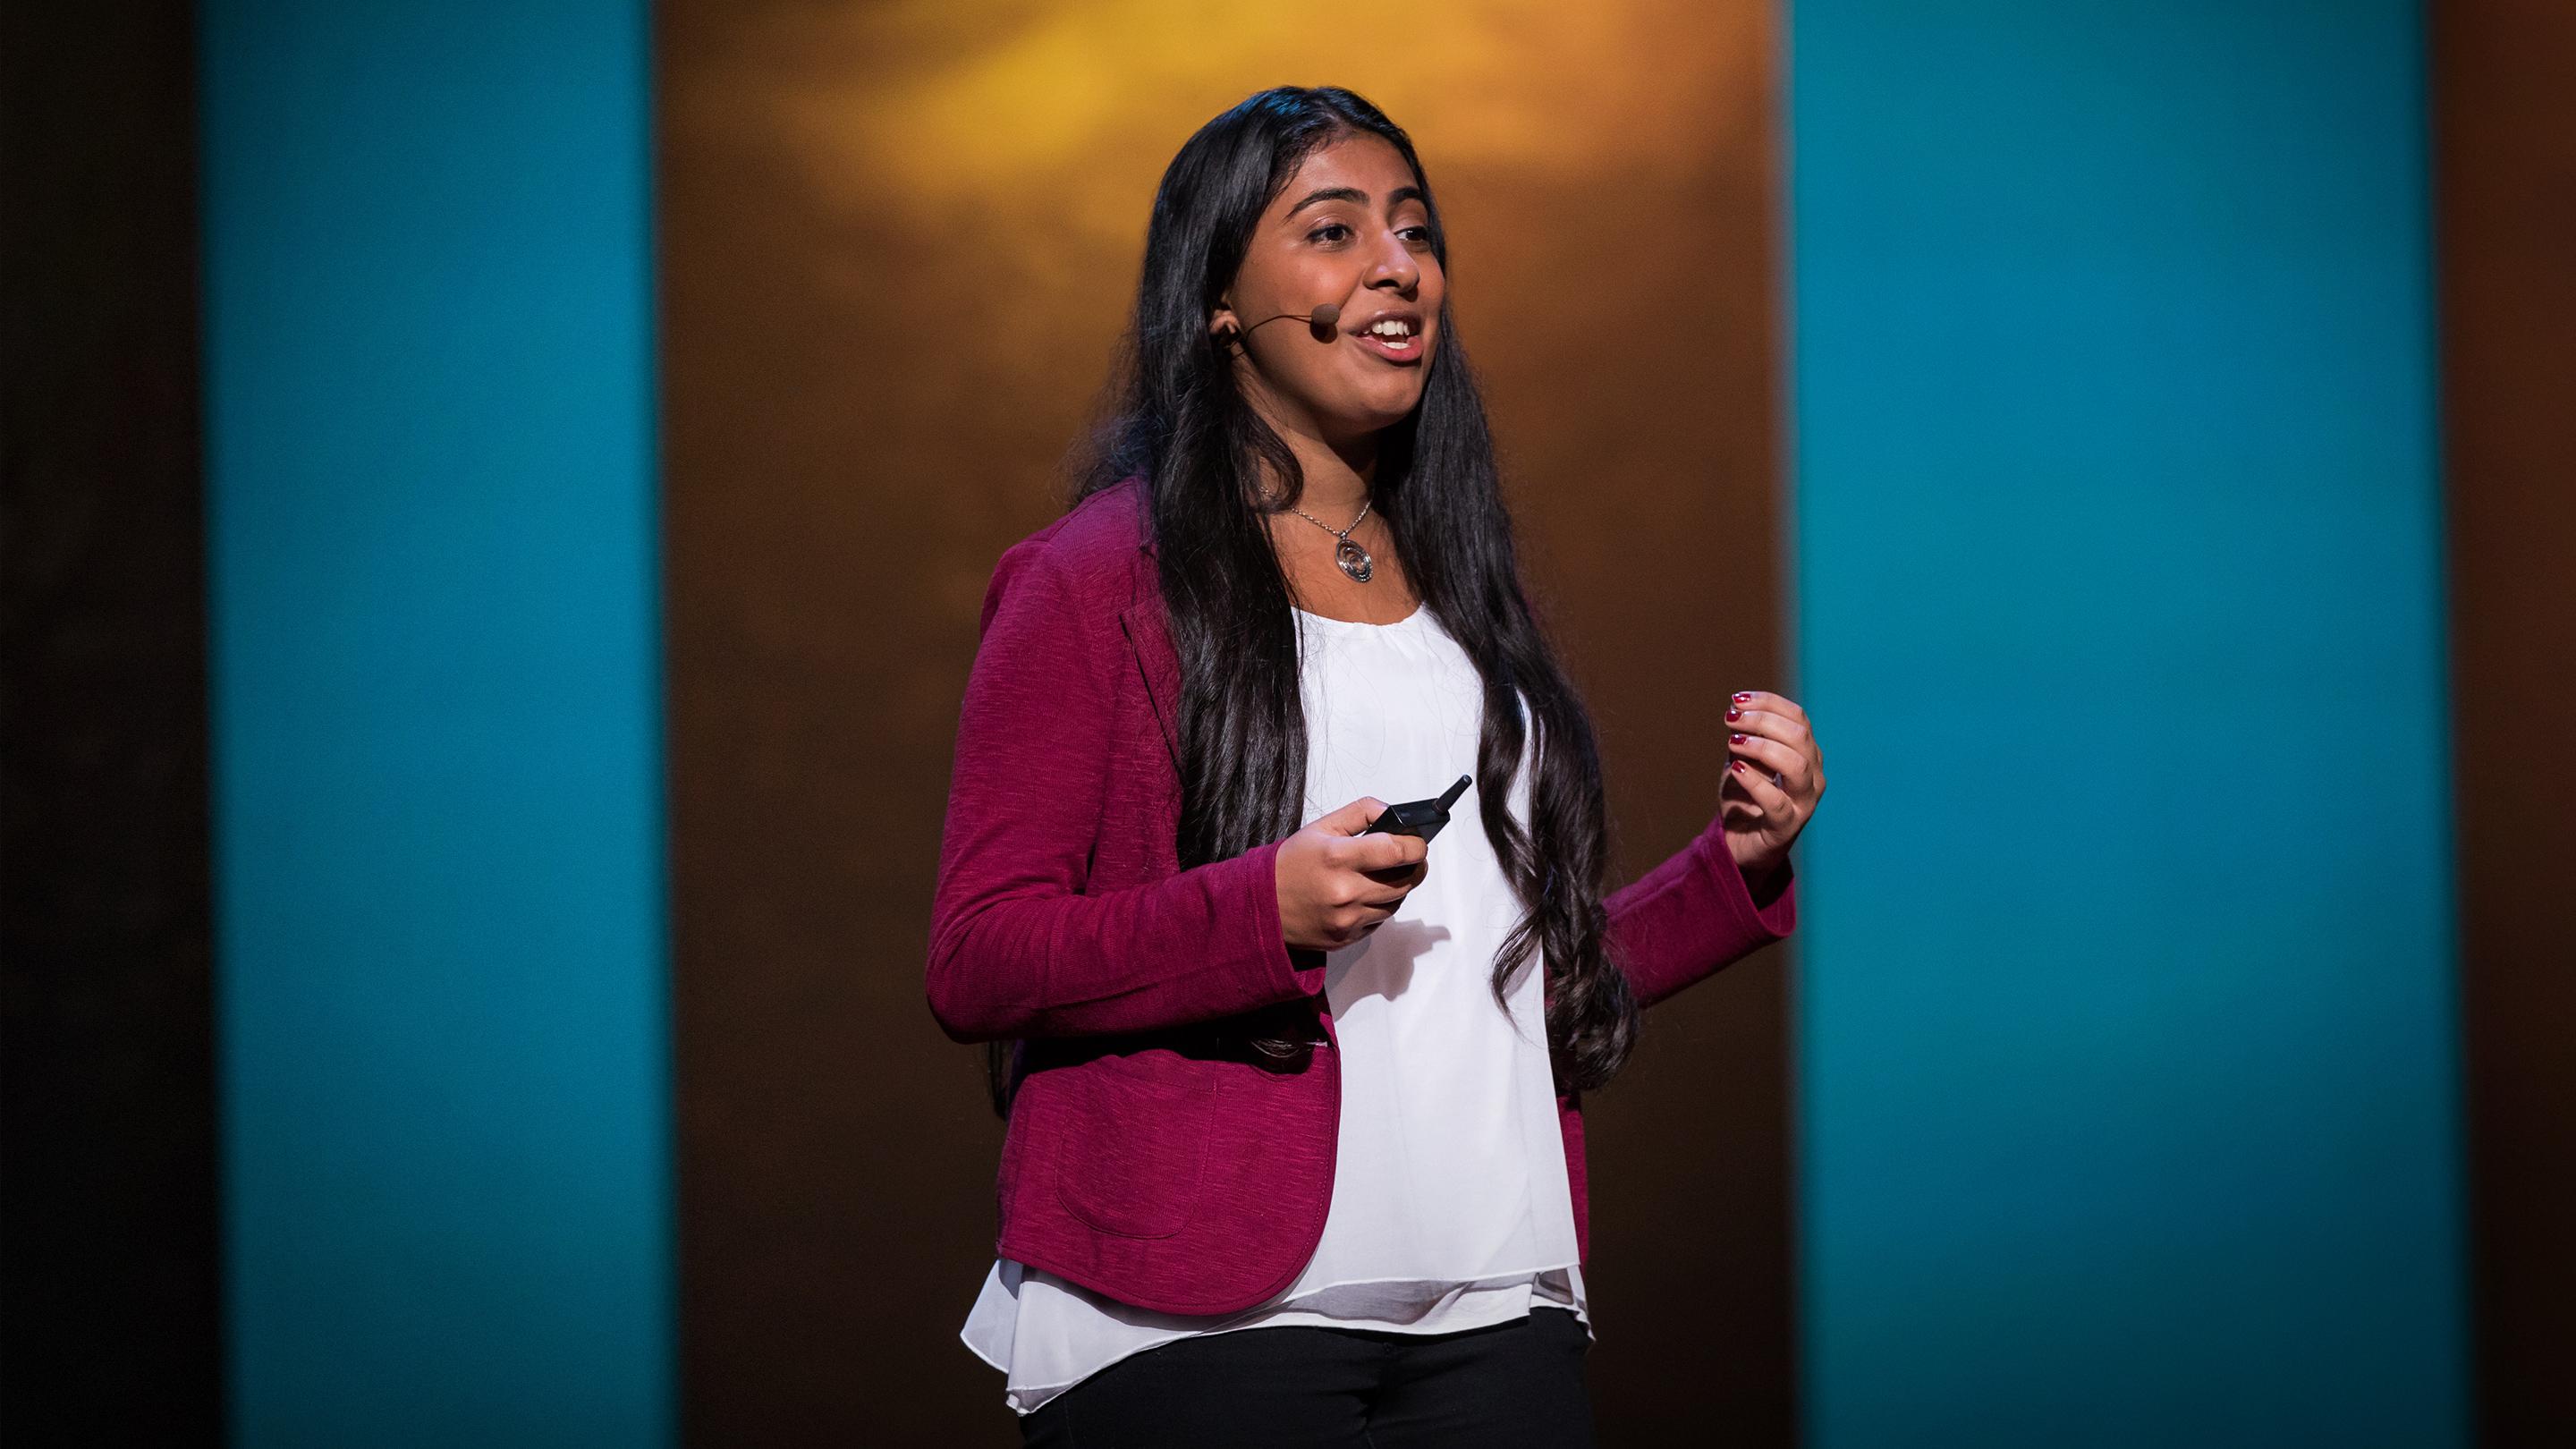 La quête d'une jeune scientifique pour de l'eau potable | Deepika Kurup